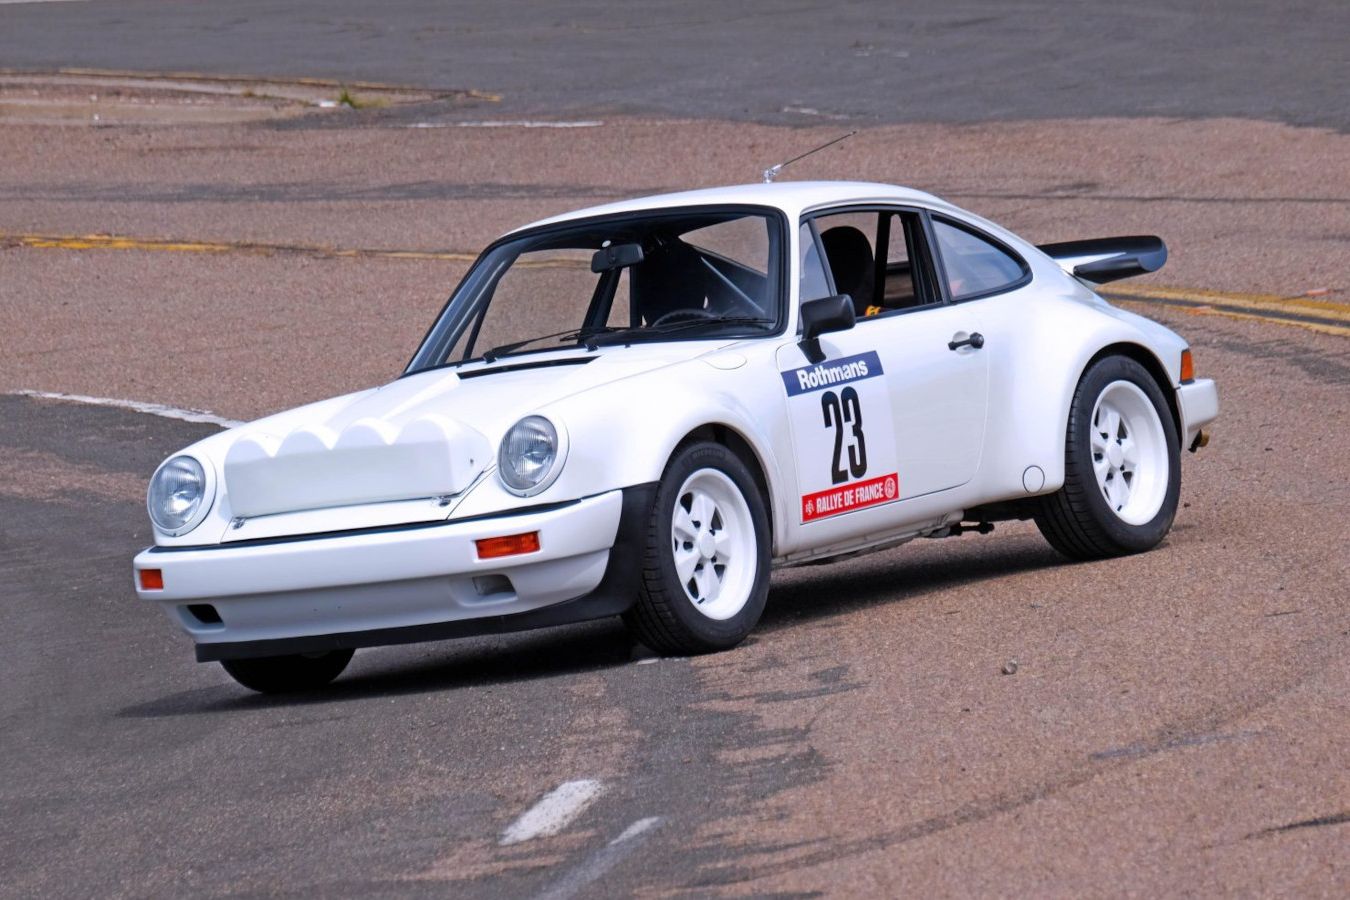 Редчайший Porsche 911 выставлен на аукцион. Он создан на базе раллийной машины Группы B